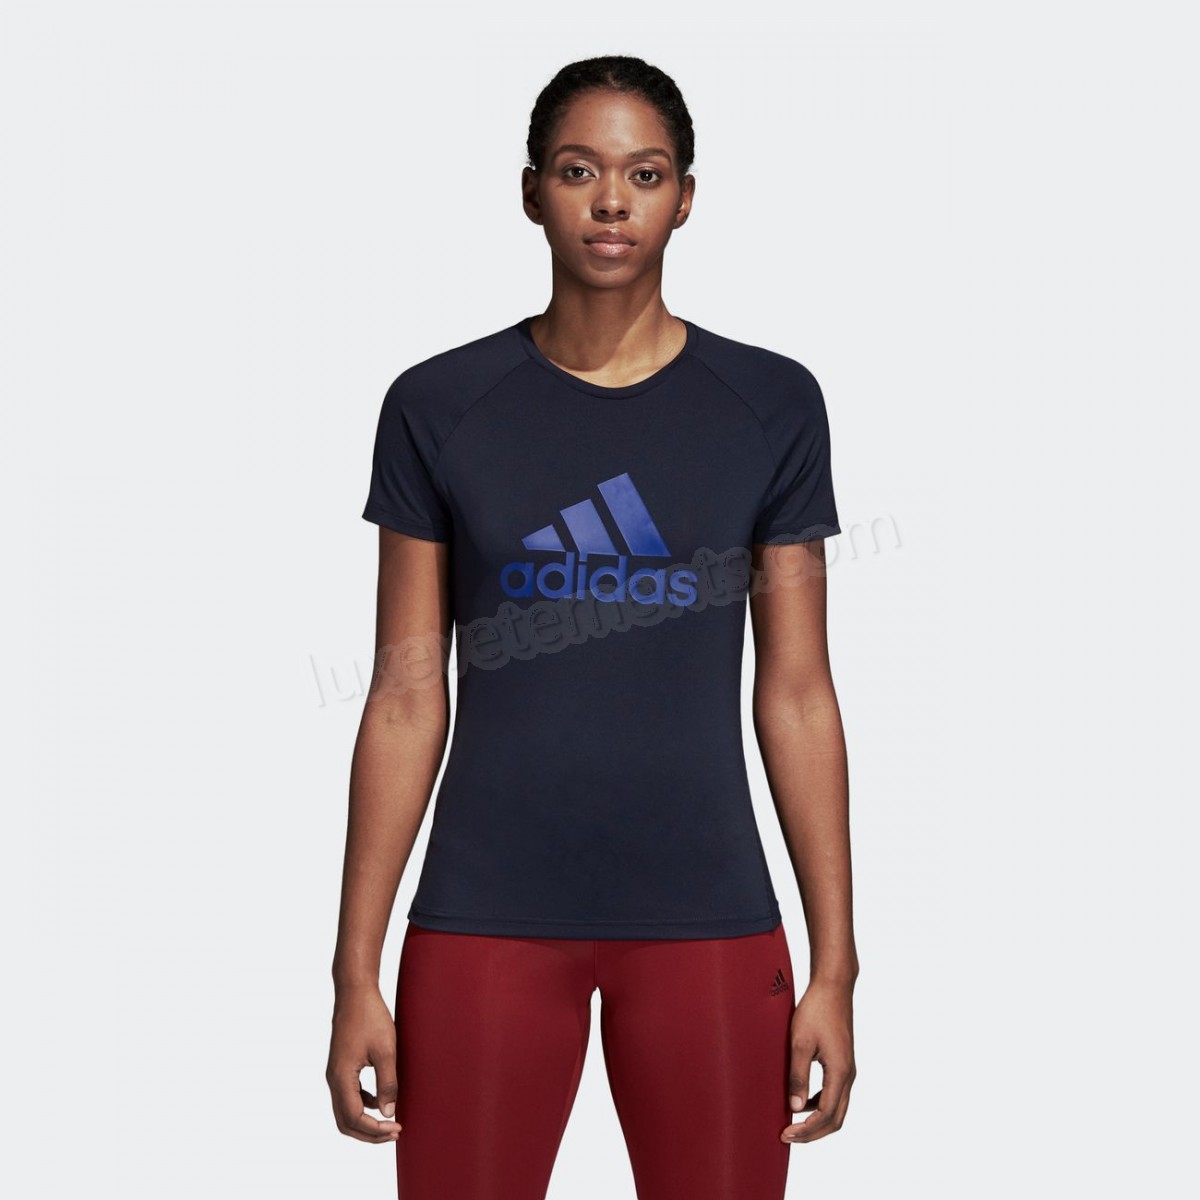 Adidas-Fitness femme ADIDAS Adidas Design 2 Move Logo Vente en ligne - -3